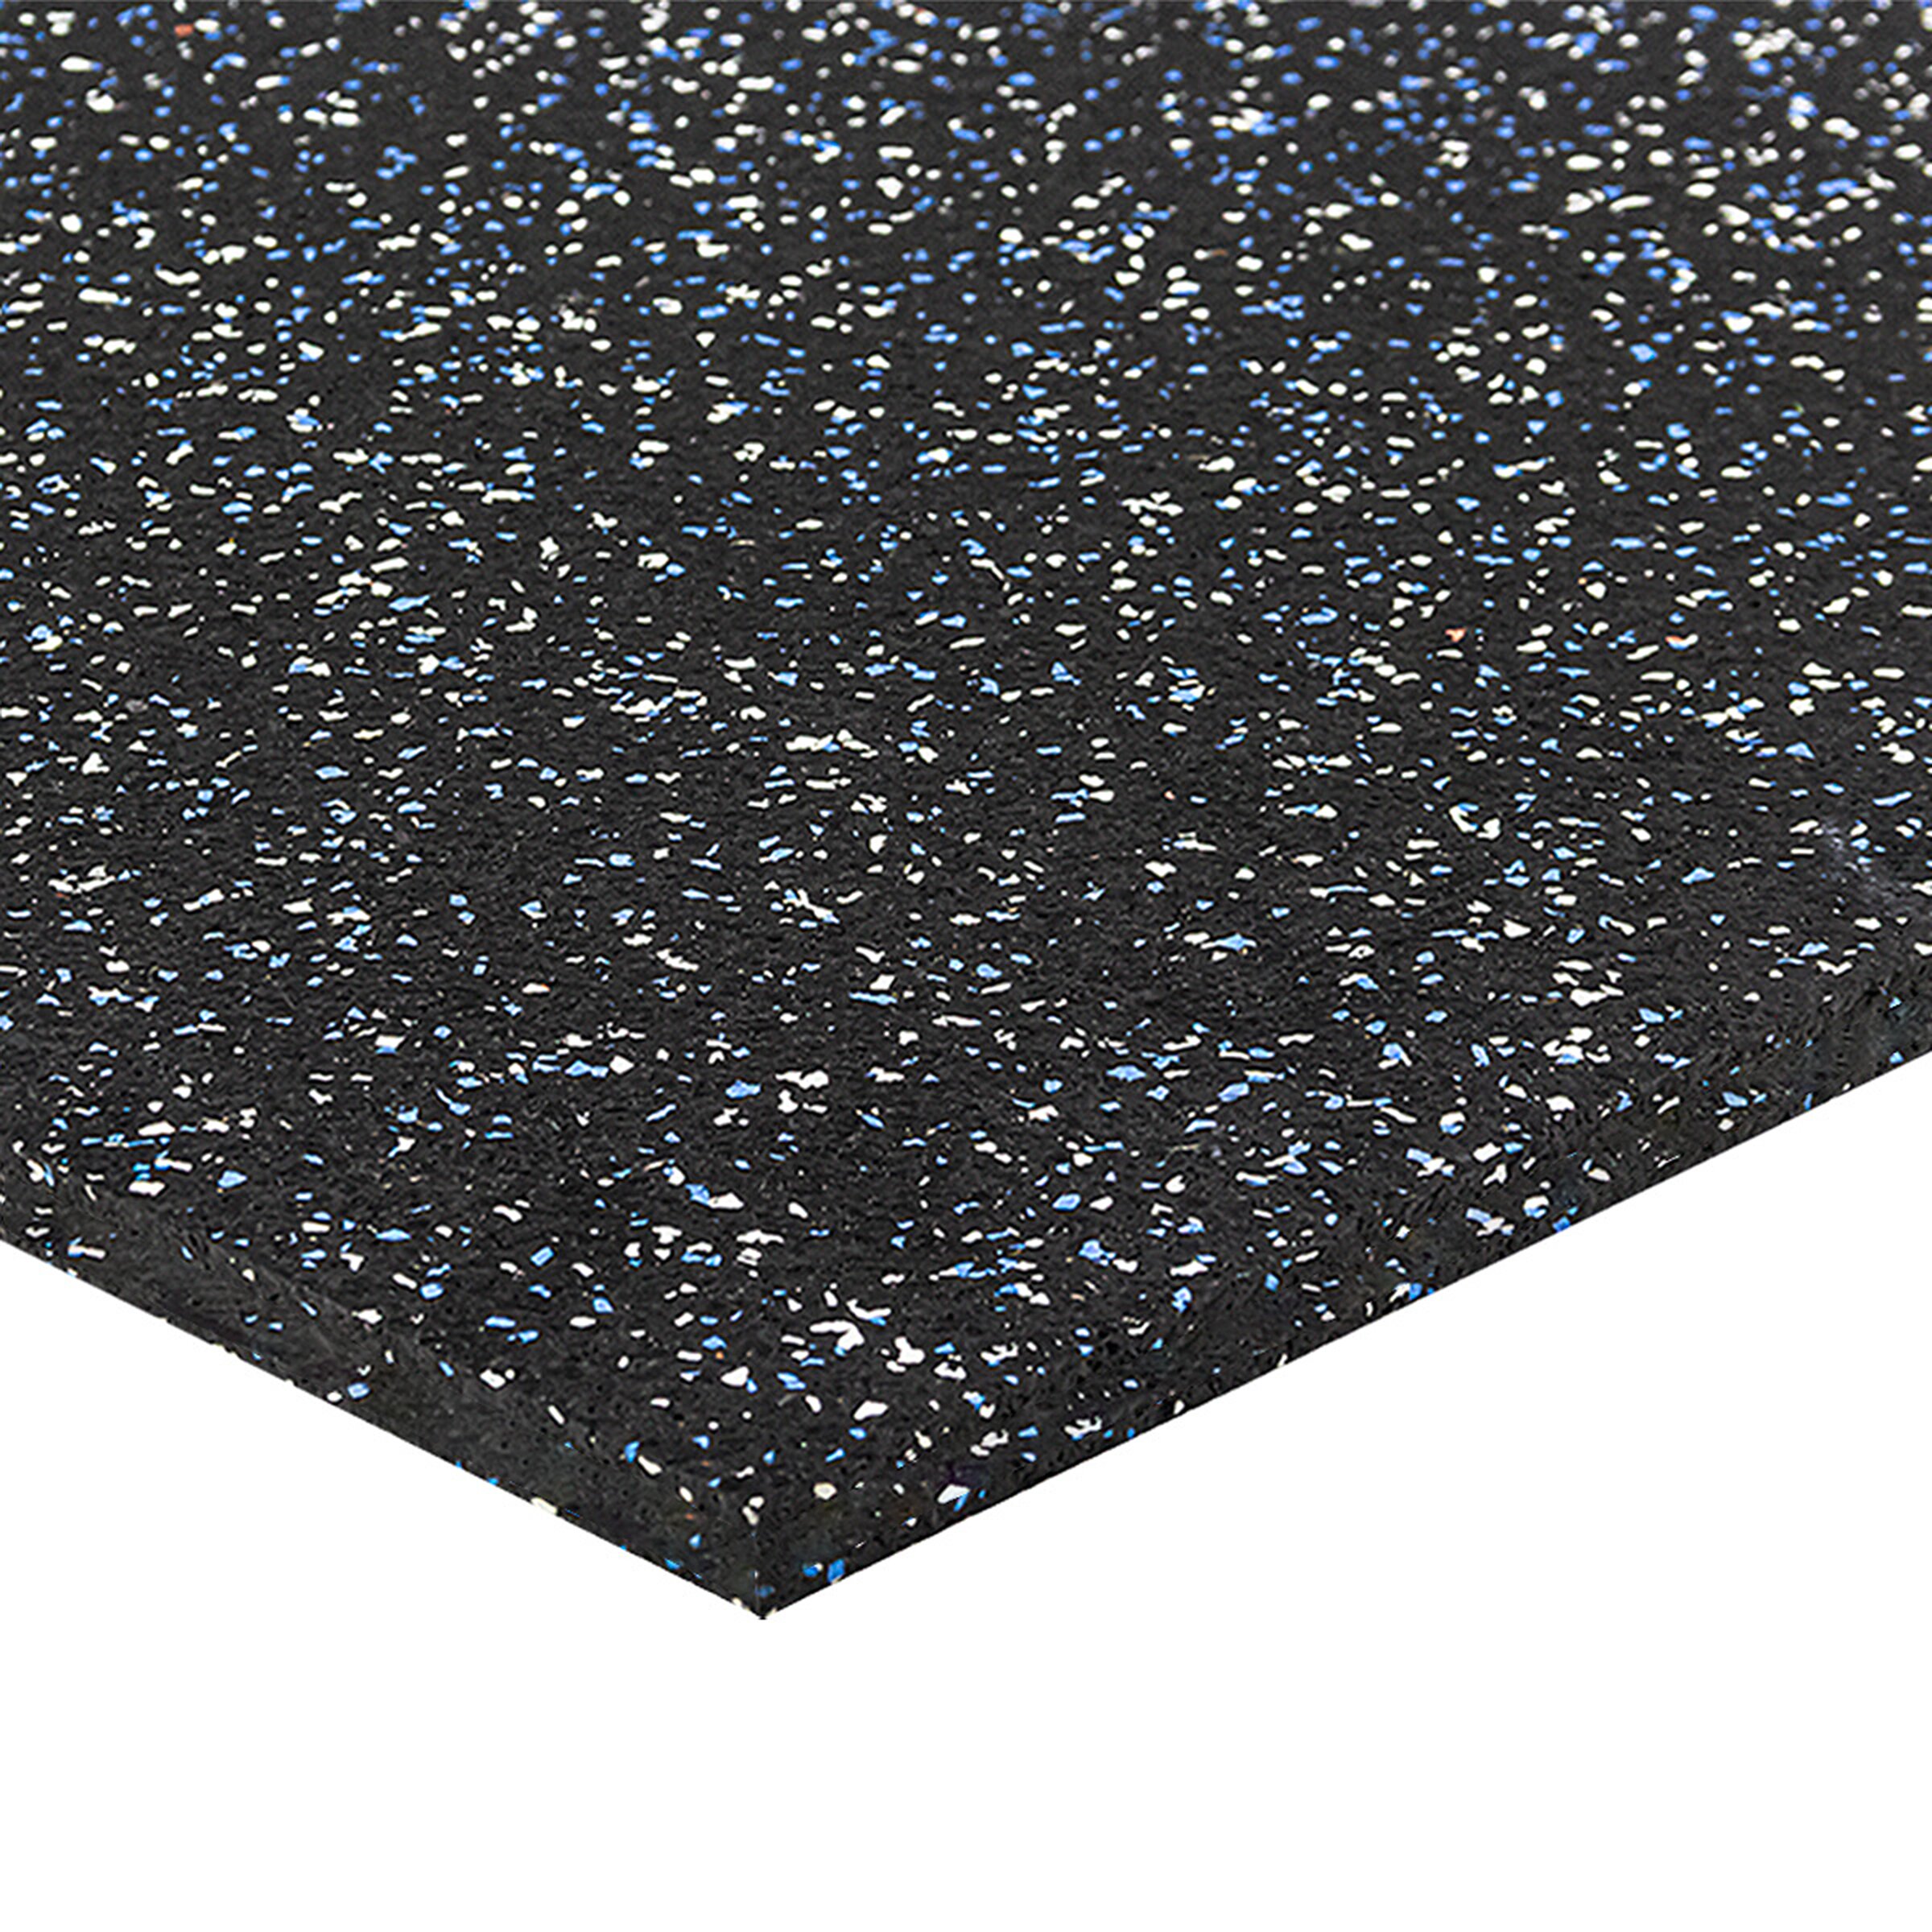 Čierno-bielo-modrá gumová modulová puzzle dlažba (roh) FLOMA FitFlo SF1050 - dĺžka 100 cm, šírka 100 cm, výška 1,6 cm